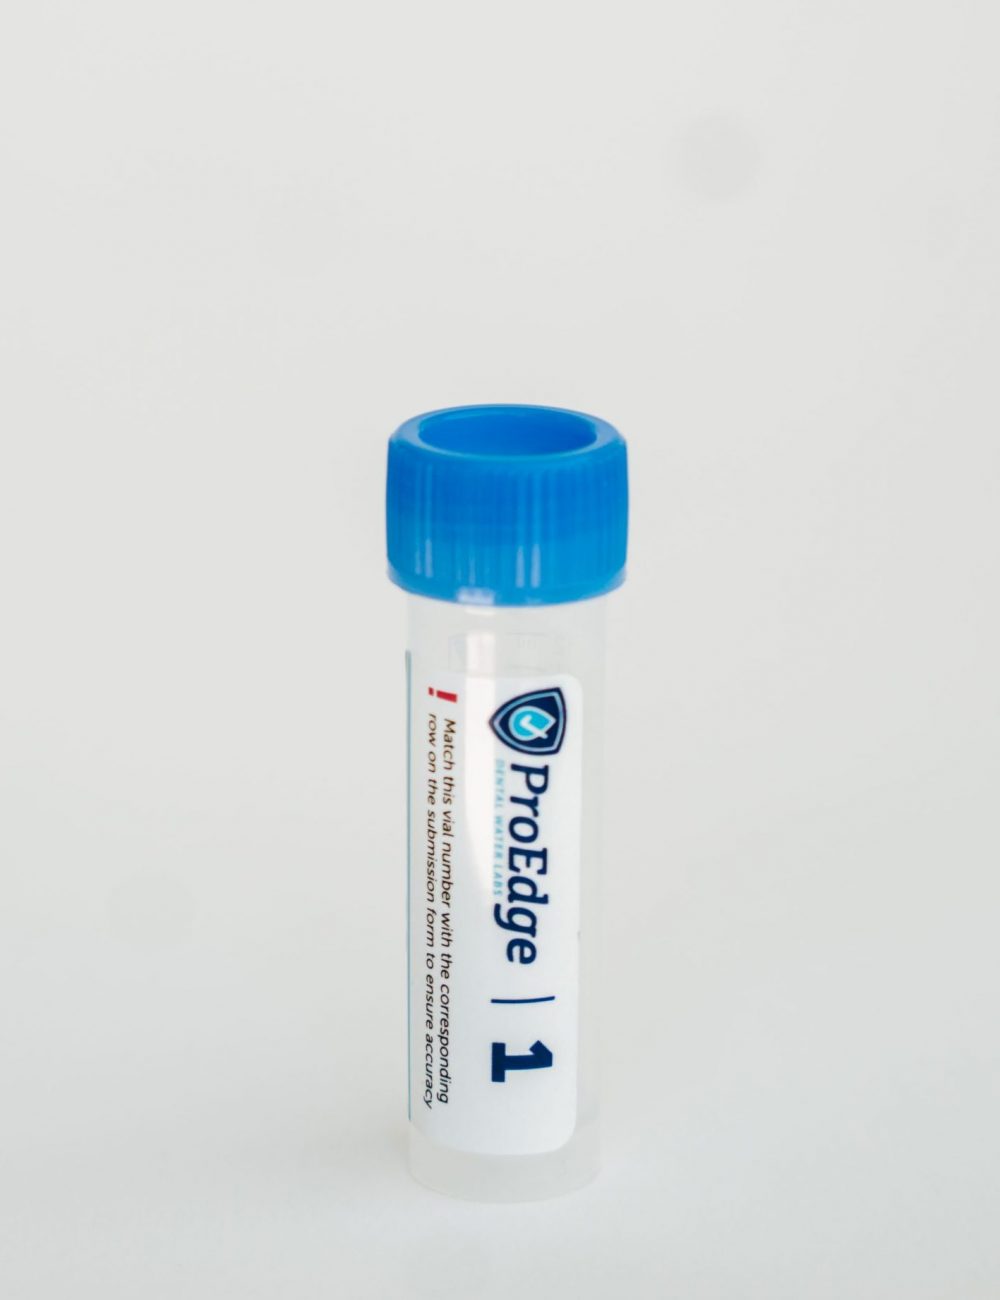 R2A or Flo waterline testing kit 1 water sample vial